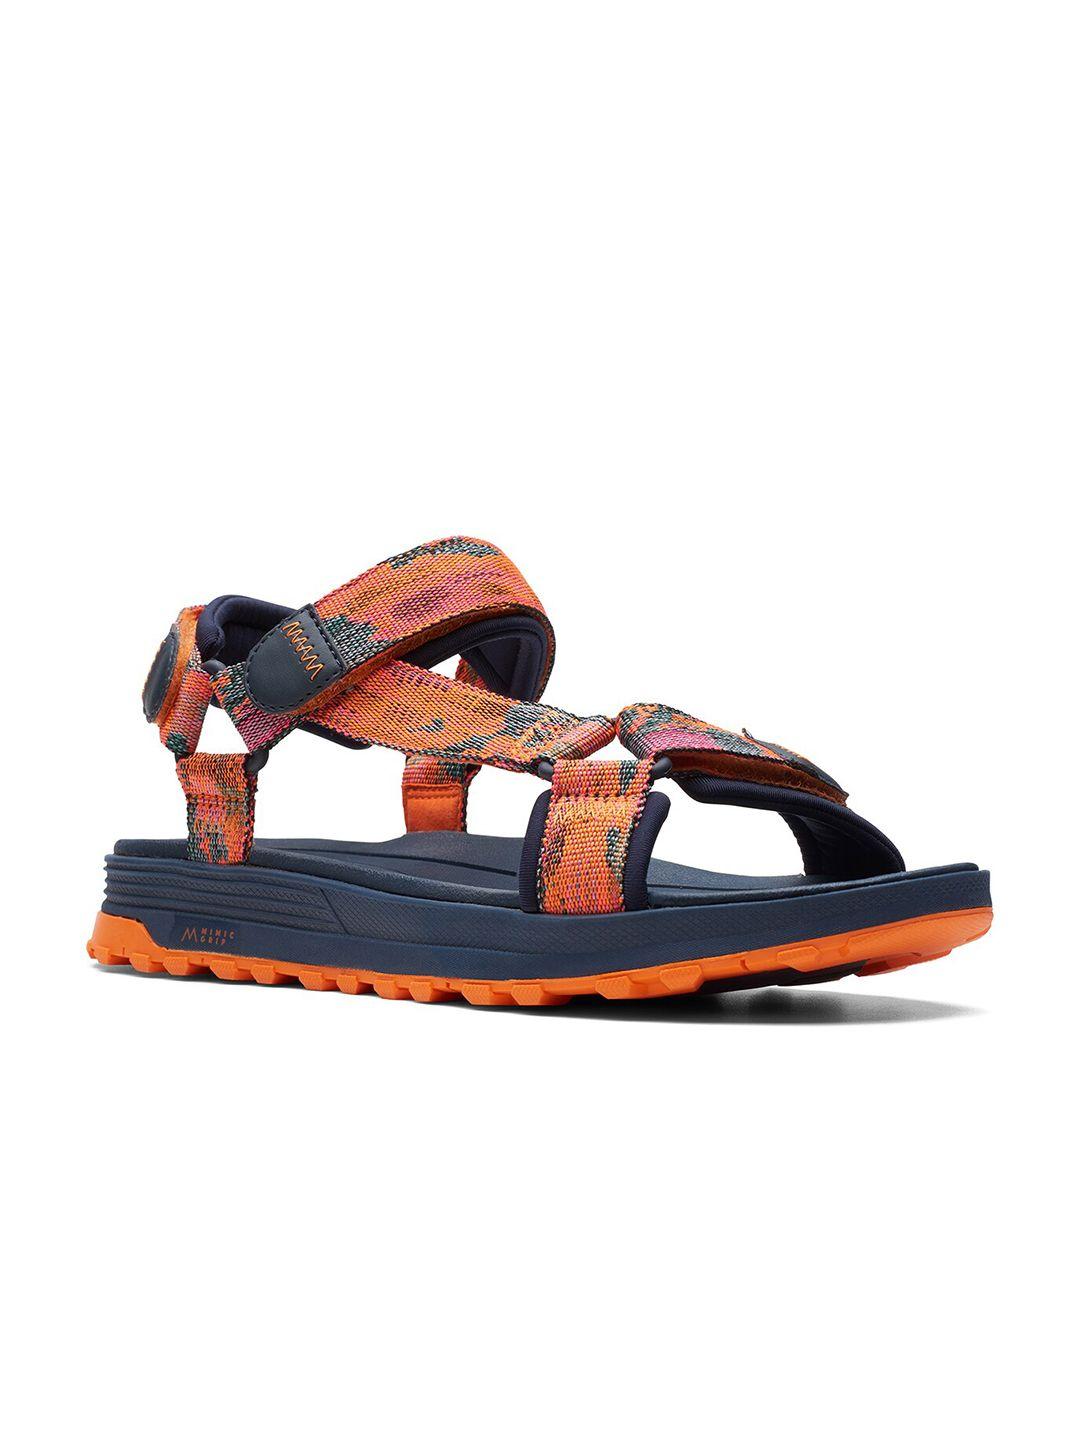 clarks-men-textile-sports-sandals